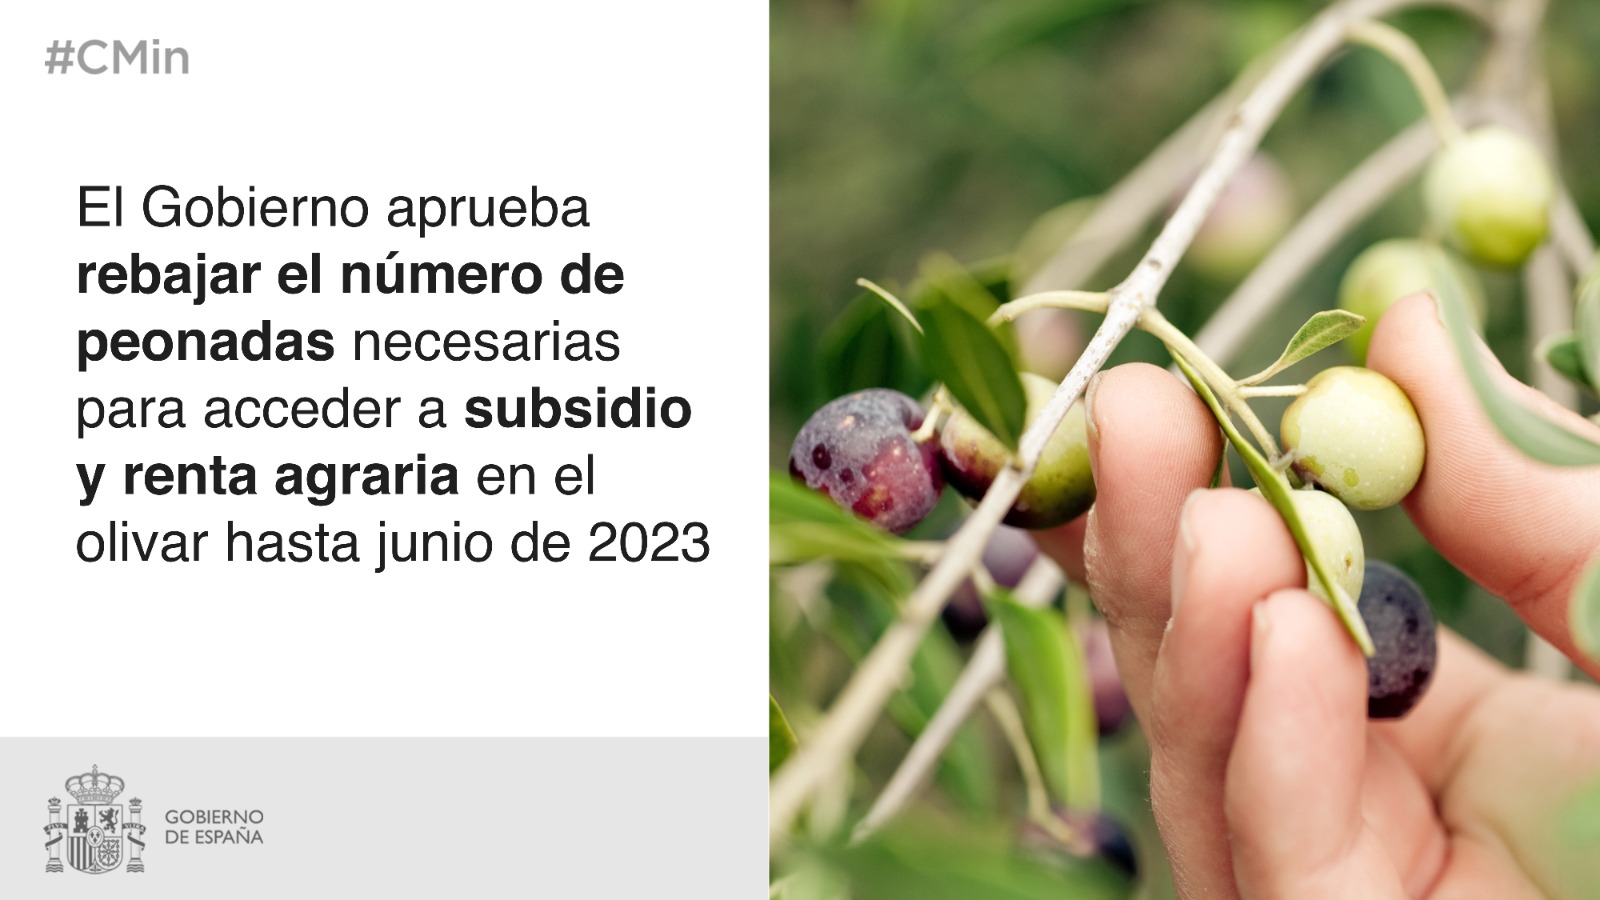 El Gobierno rebaja a 10 el número de peonadas necesarias para acceder a  subsidio y renta agraria hasta junio de 2023